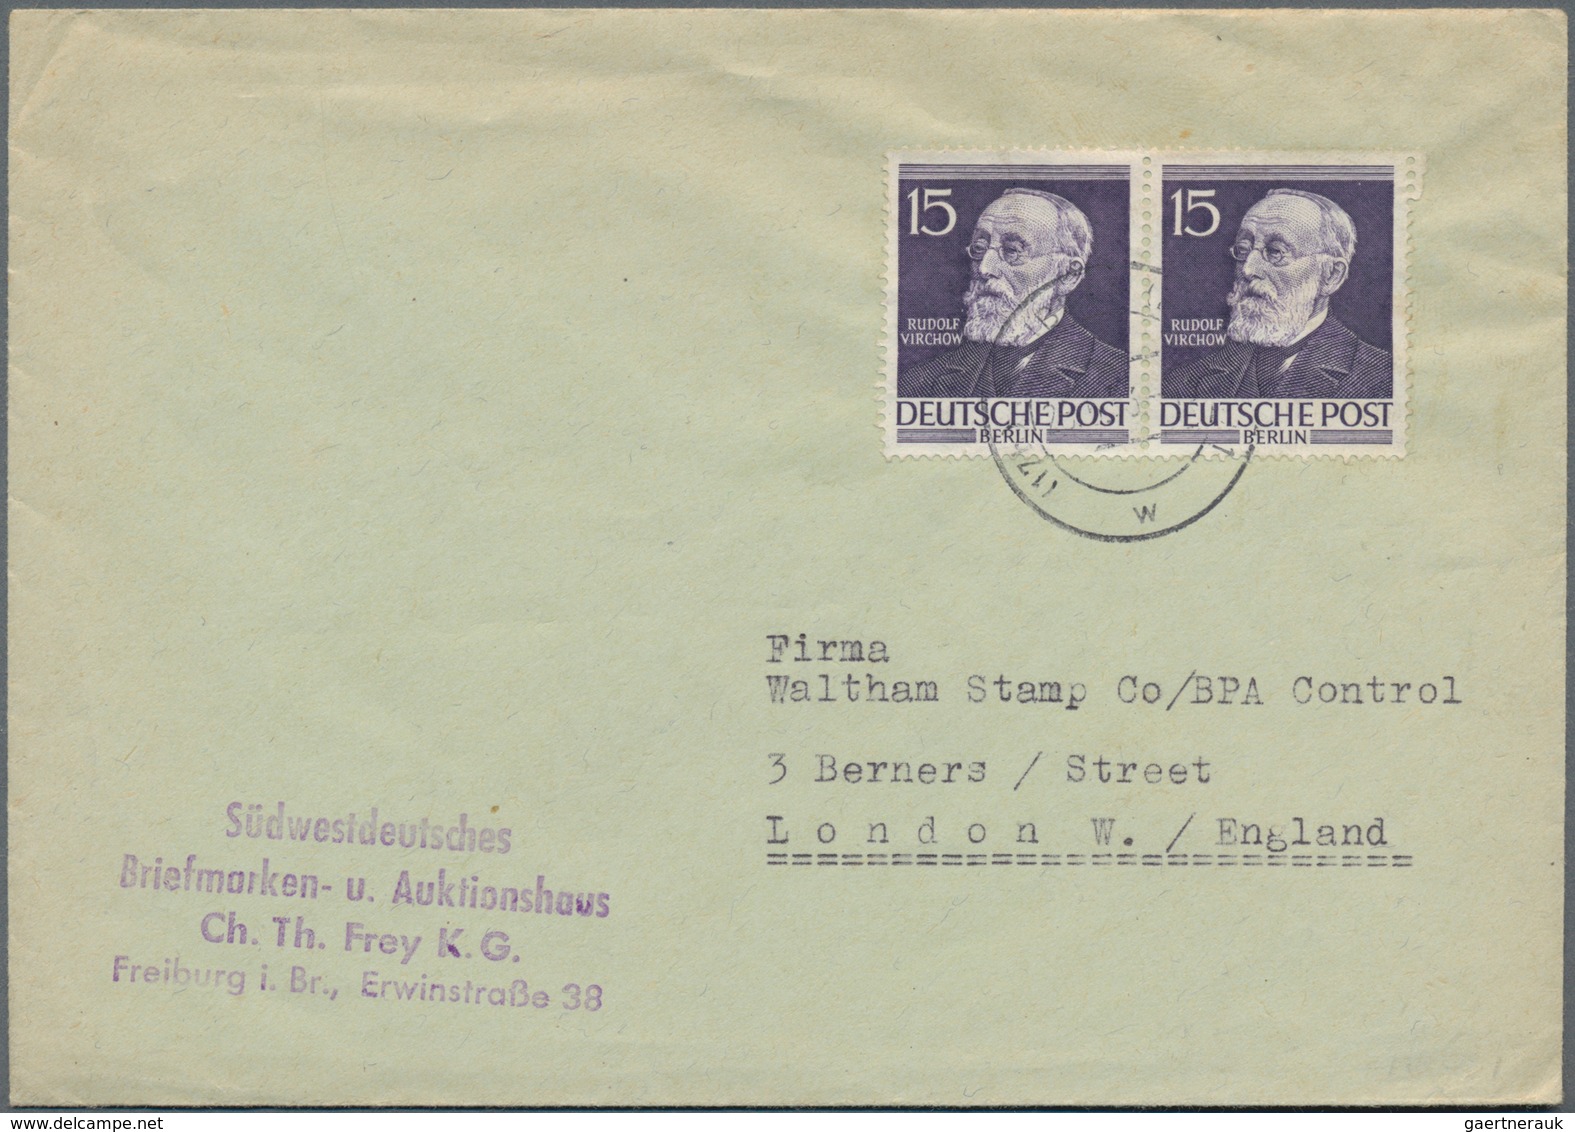 Berlin: 1948/1962, vielseitige Partie von ca. 215 Briefen und Karten, etwas unterschiedliche Bedarfs